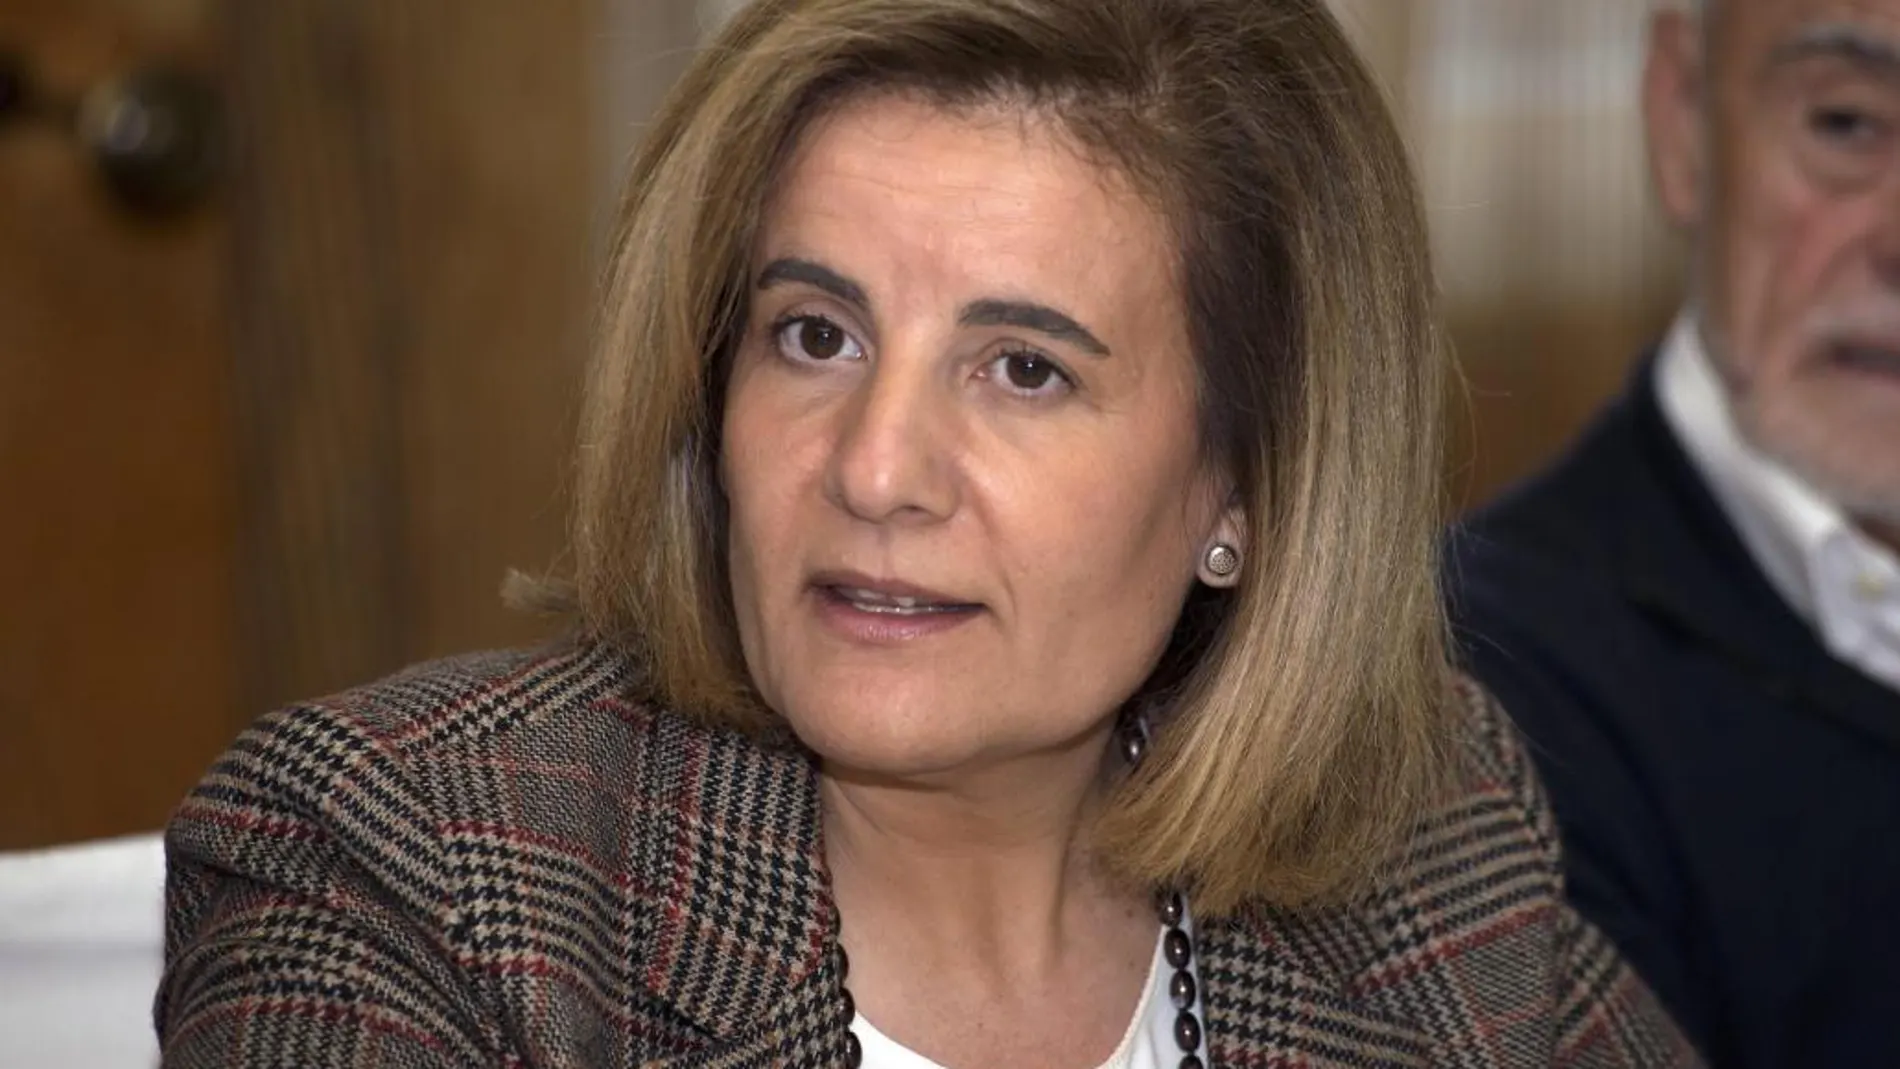 La ministra de Empleo y Seguridad Social, Fátima Báñez, durante un acto público.